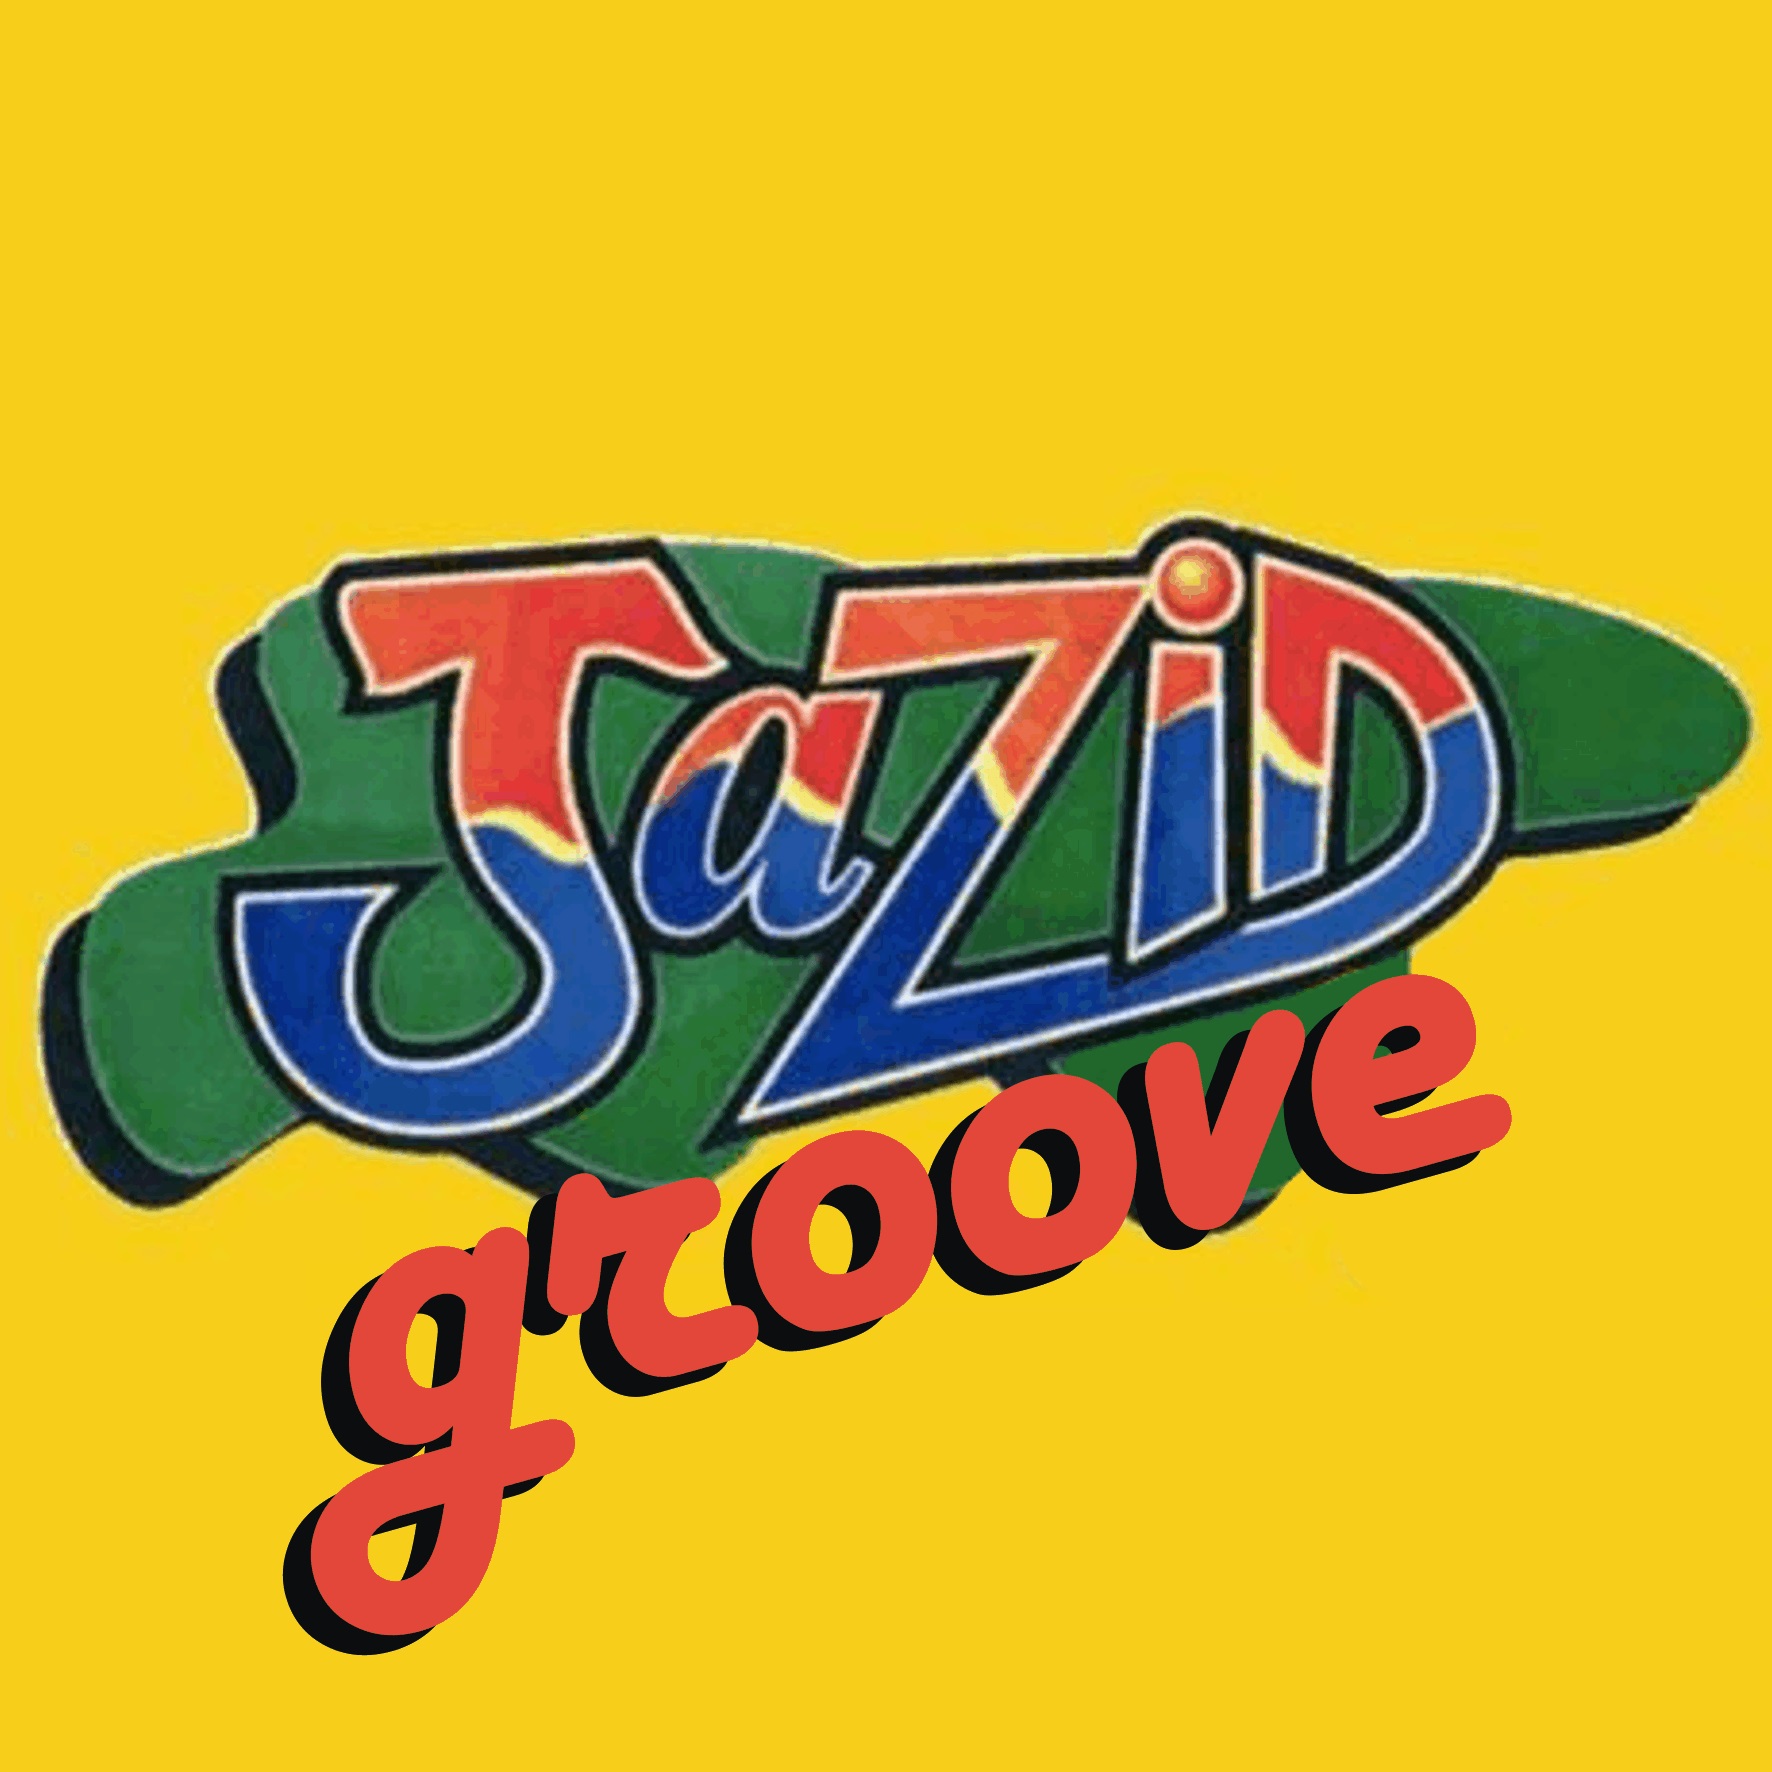 Jazid Groove 41